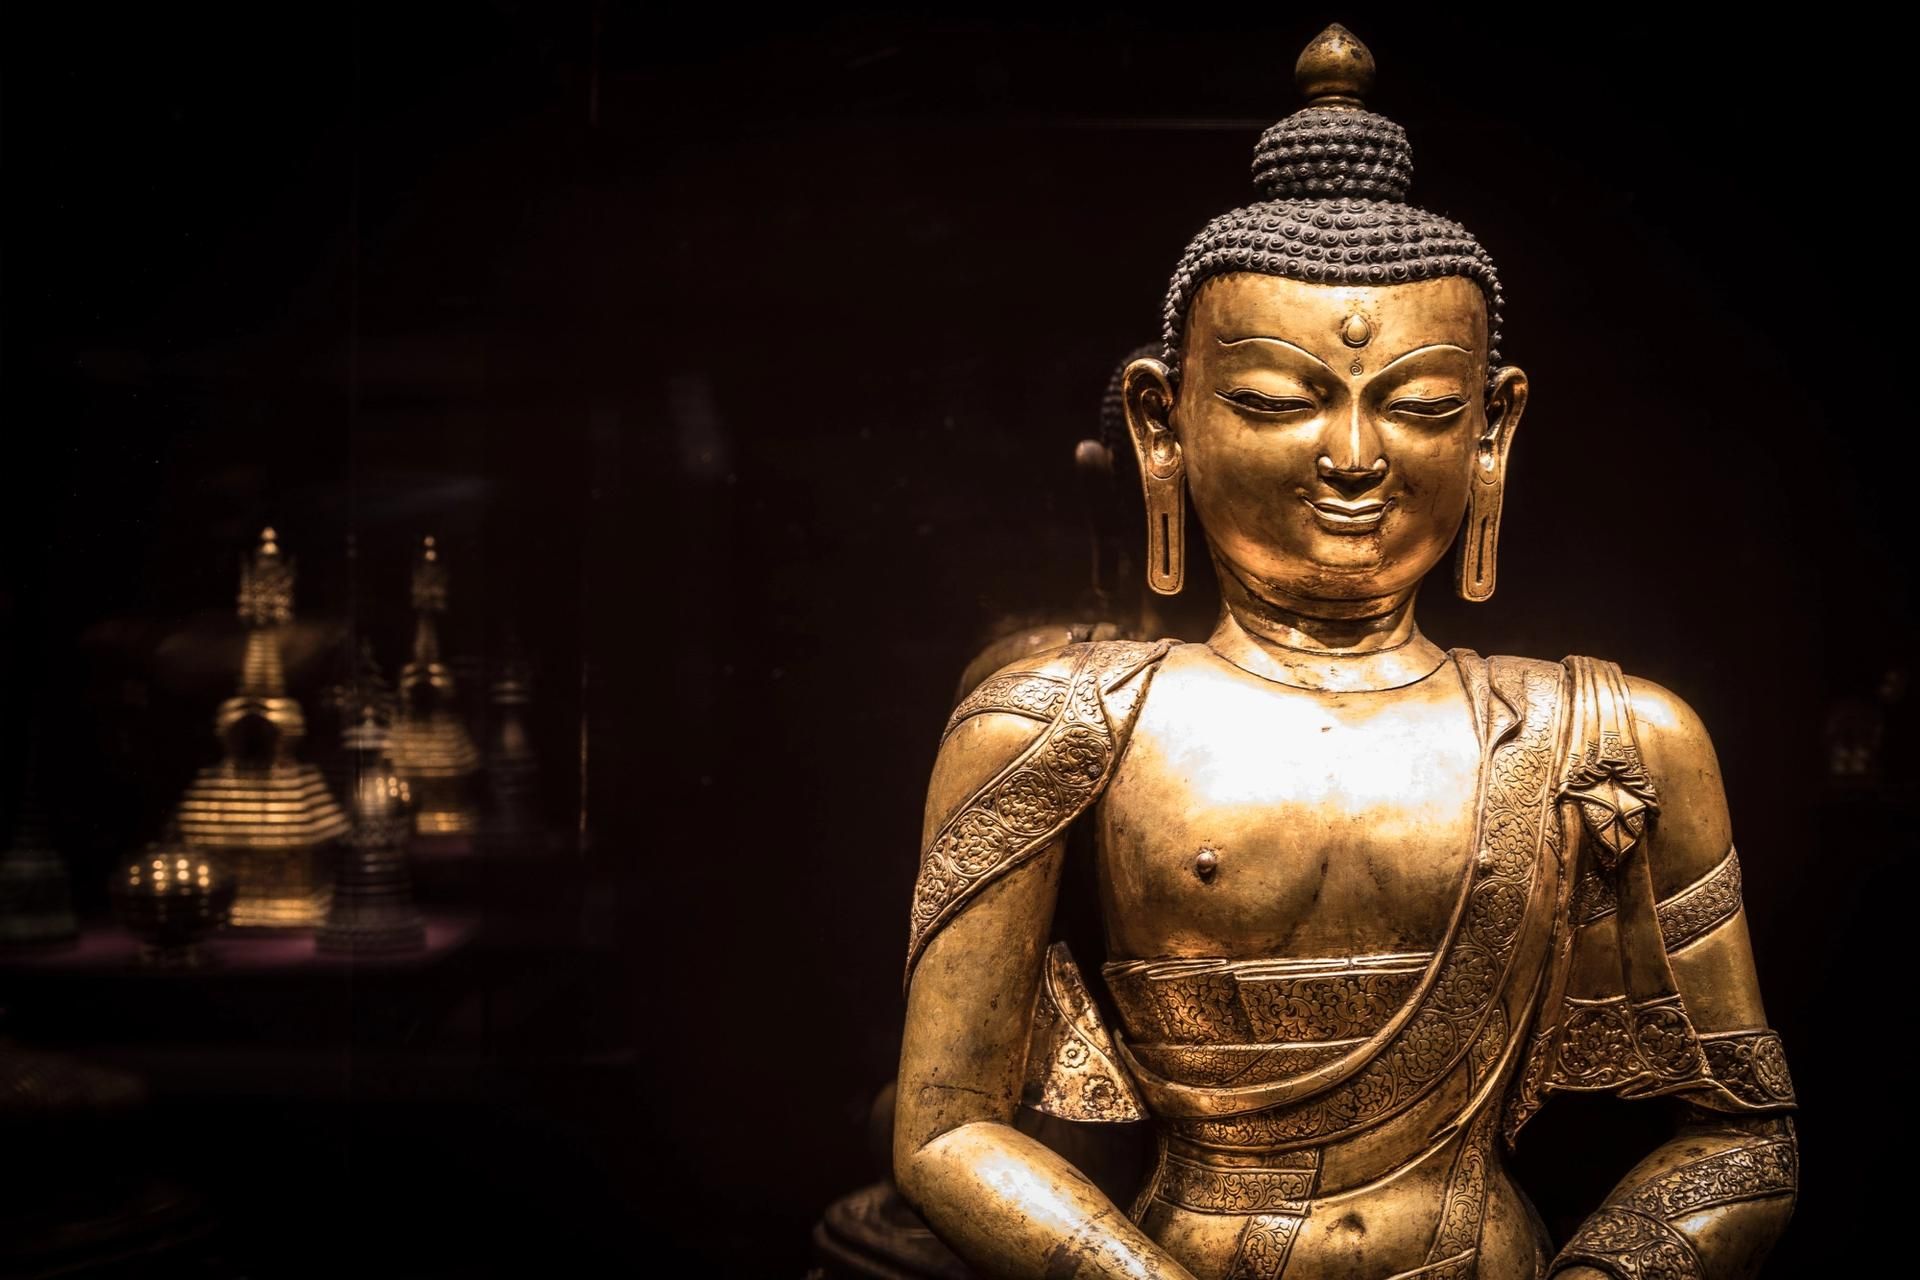 תמונה מתוך: Encountering the Buddha: Art and Practice Across Asia, במוזיאון הלאומי של סמית'סוניאן לאמנות אסייתית

באדיבות מכון סמית'סוניאן


